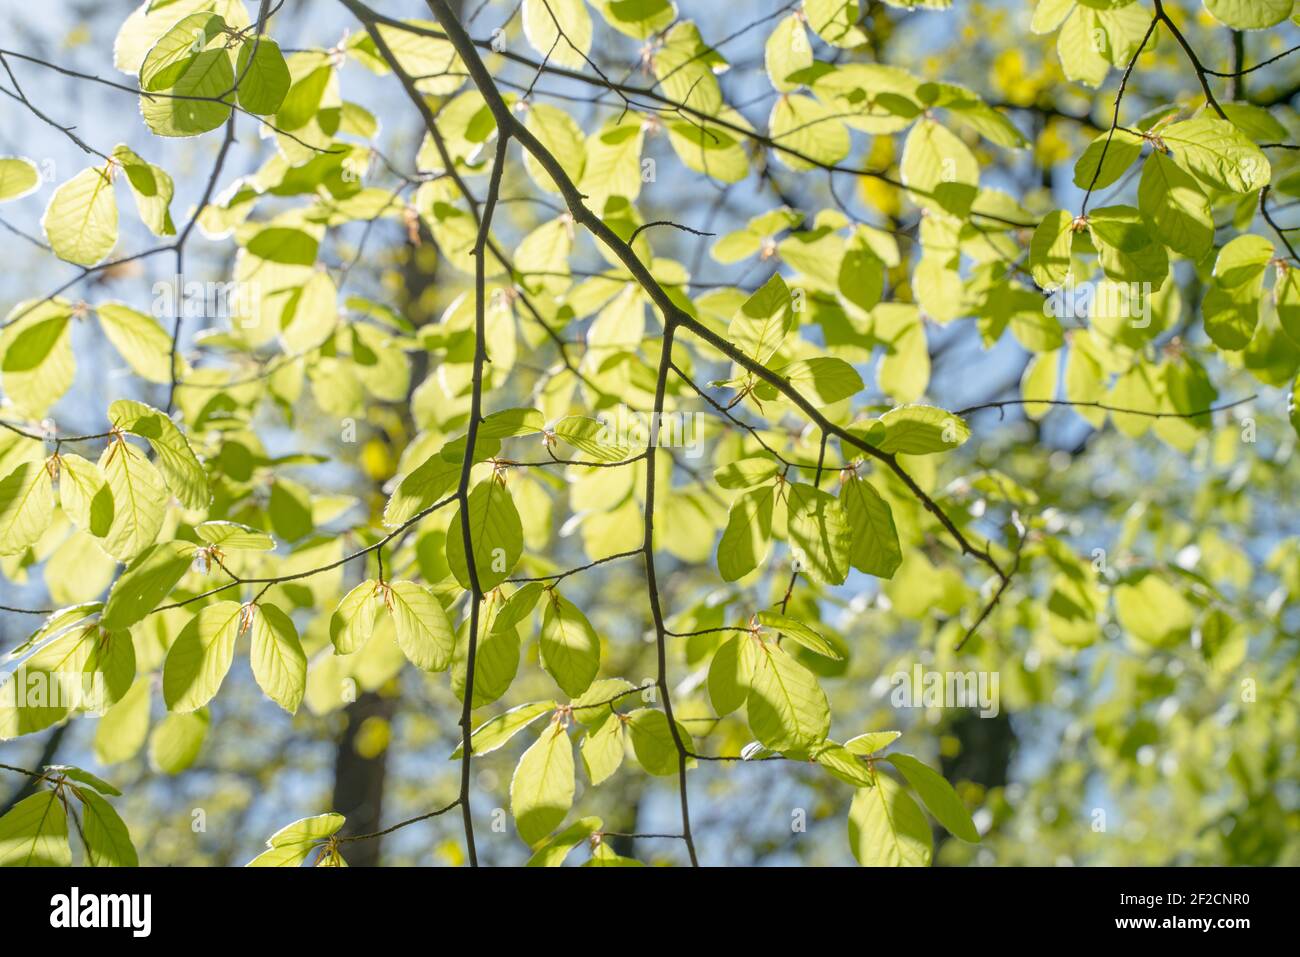 Primo piano immagini di verdi foglie giovani in una giornata di sole nei boschi in primavera, quando la natura si sveglia a fiorire con la luce del sole che pascola attraverso gli alberi Foto Stock